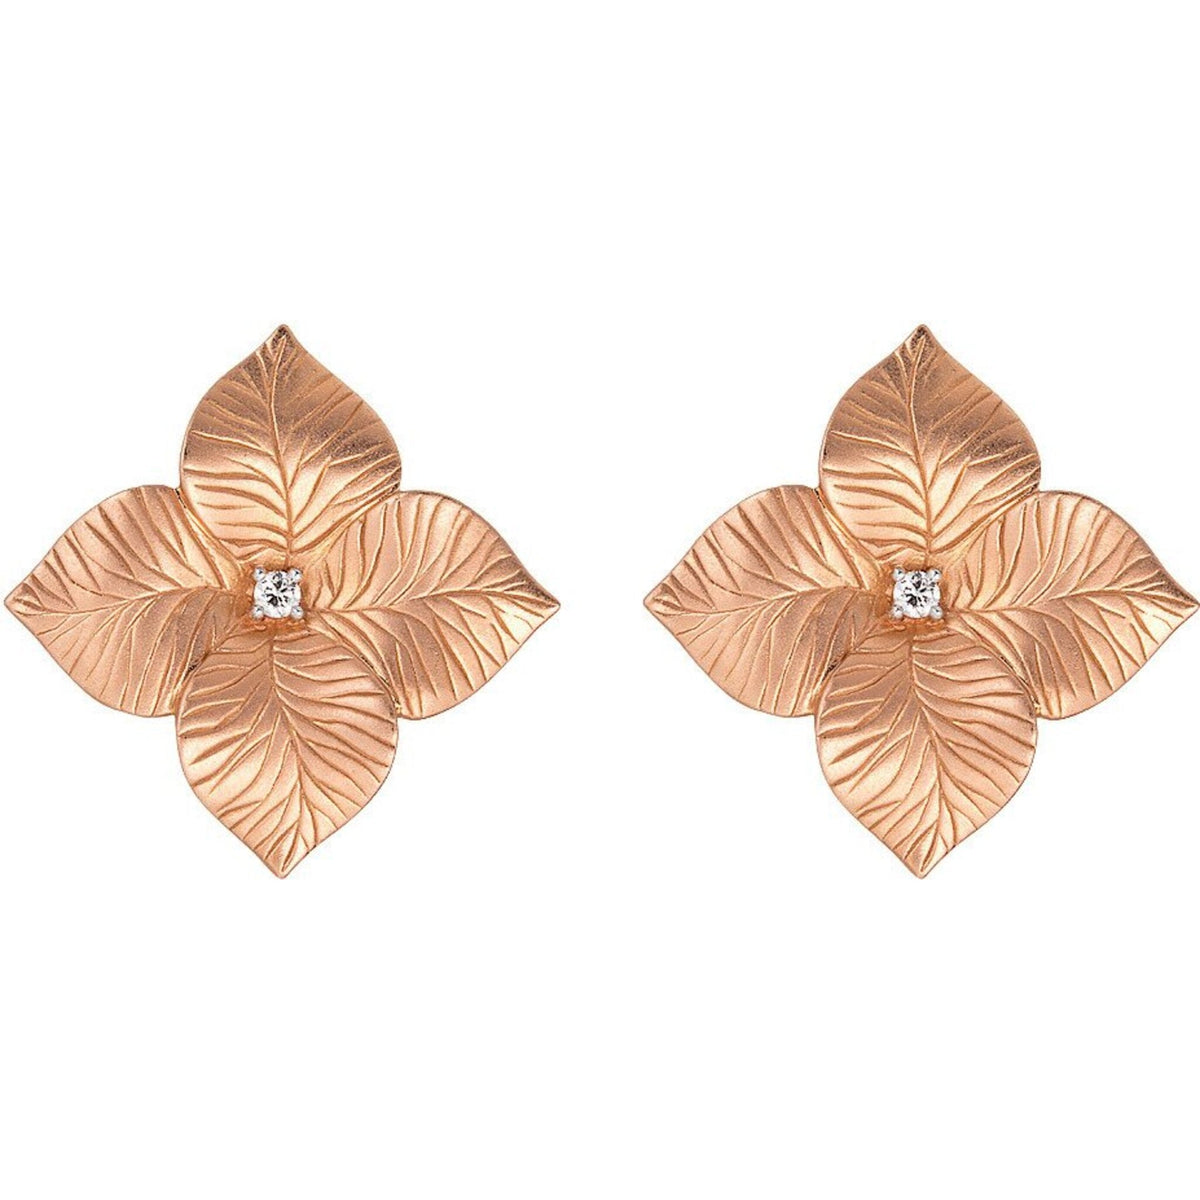 Elegant rose gold flower earrings by Piranesi